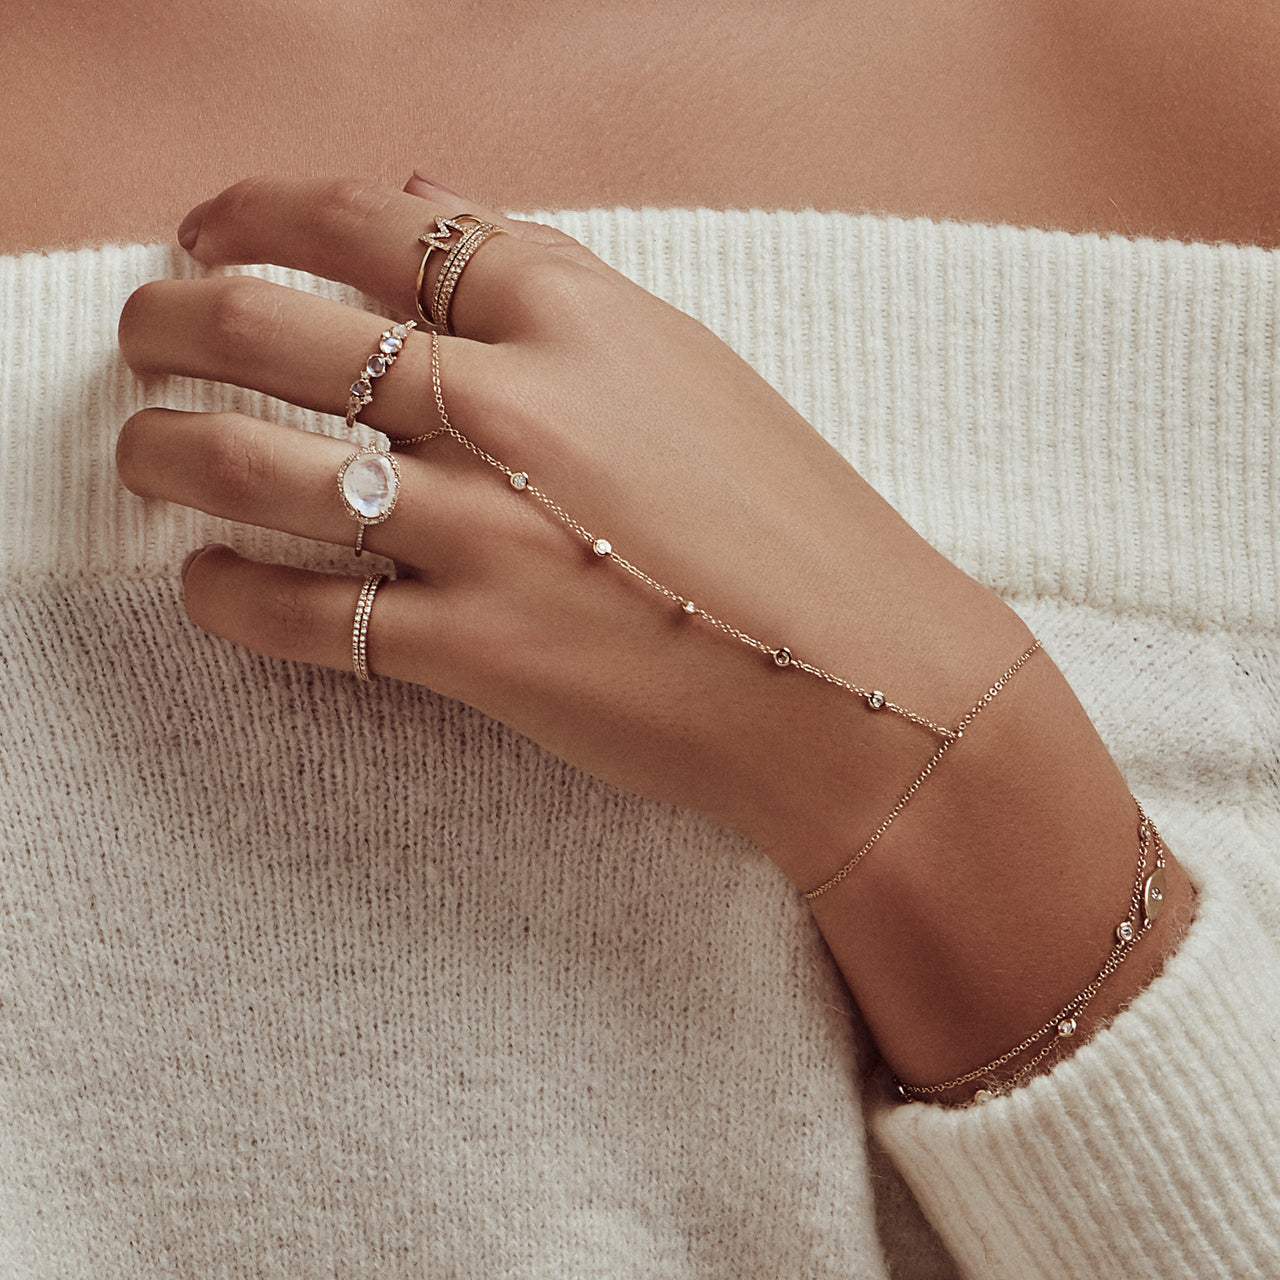 Bomine Finger Bracelet Ring Rhinestone Hand Chain India | Ubuy